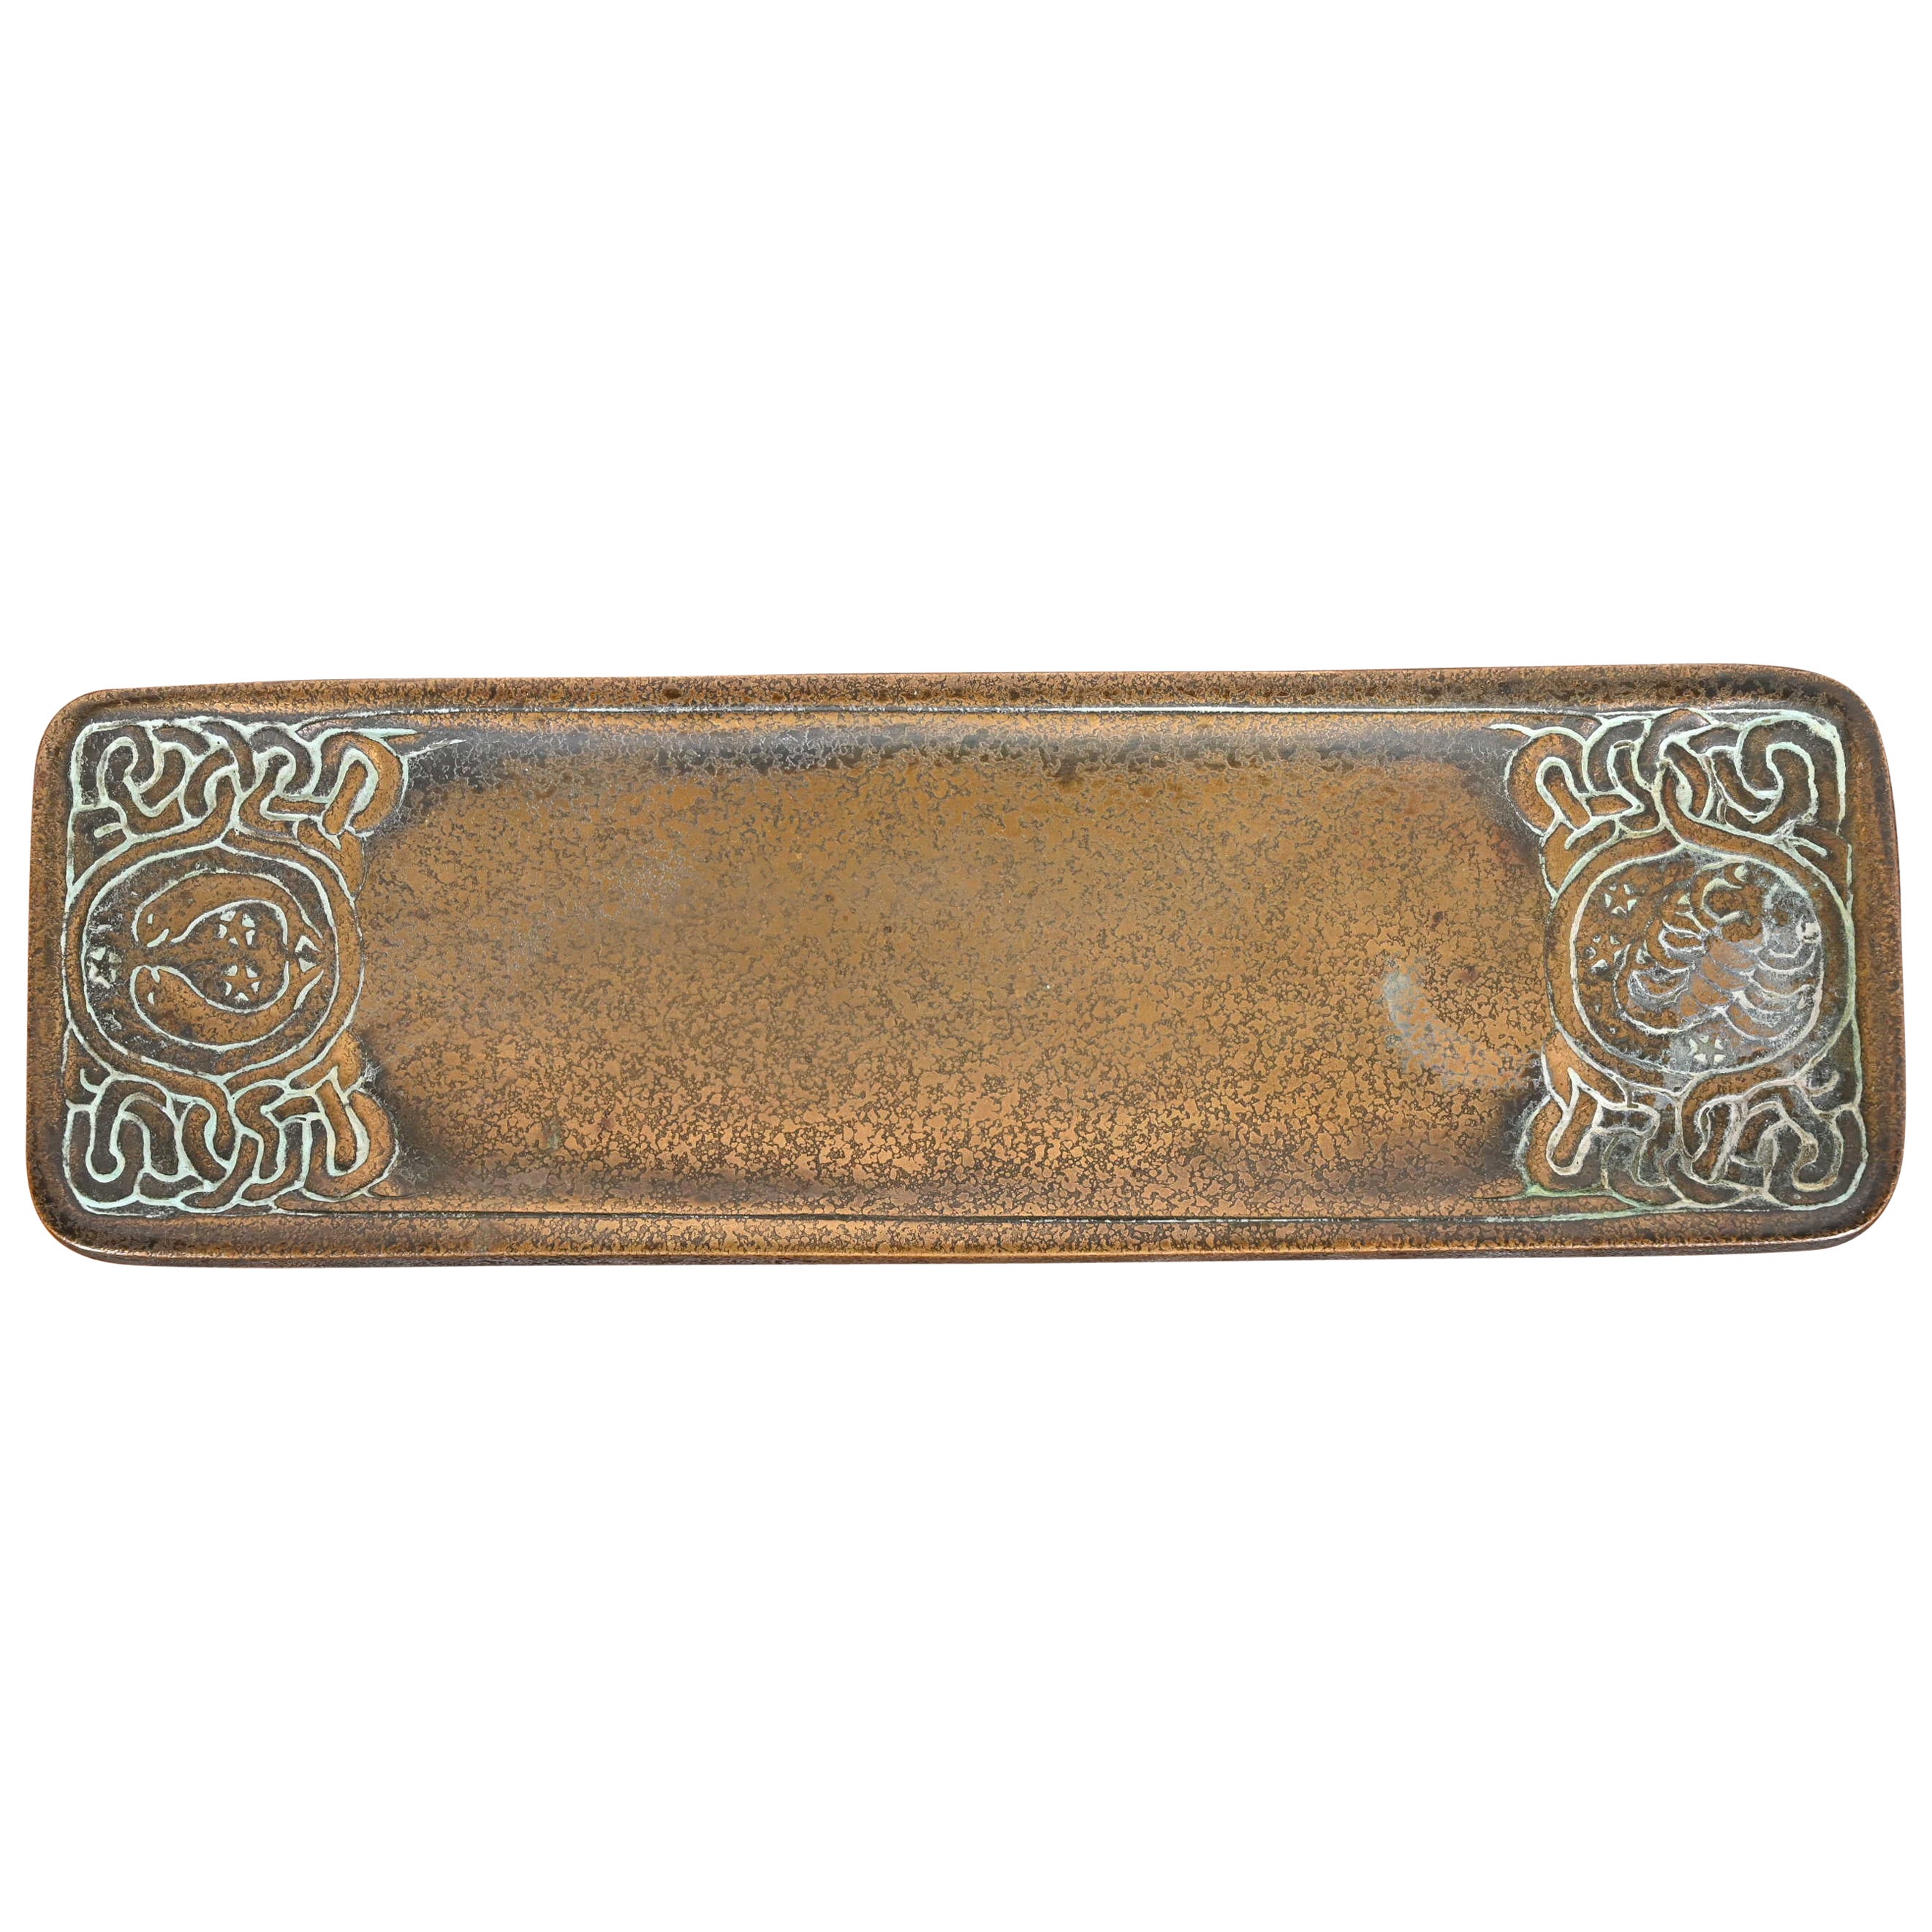 Tiffany Studios New York 'Zodiac' Bronze Pen Tray Desk Accessory, circa 1910